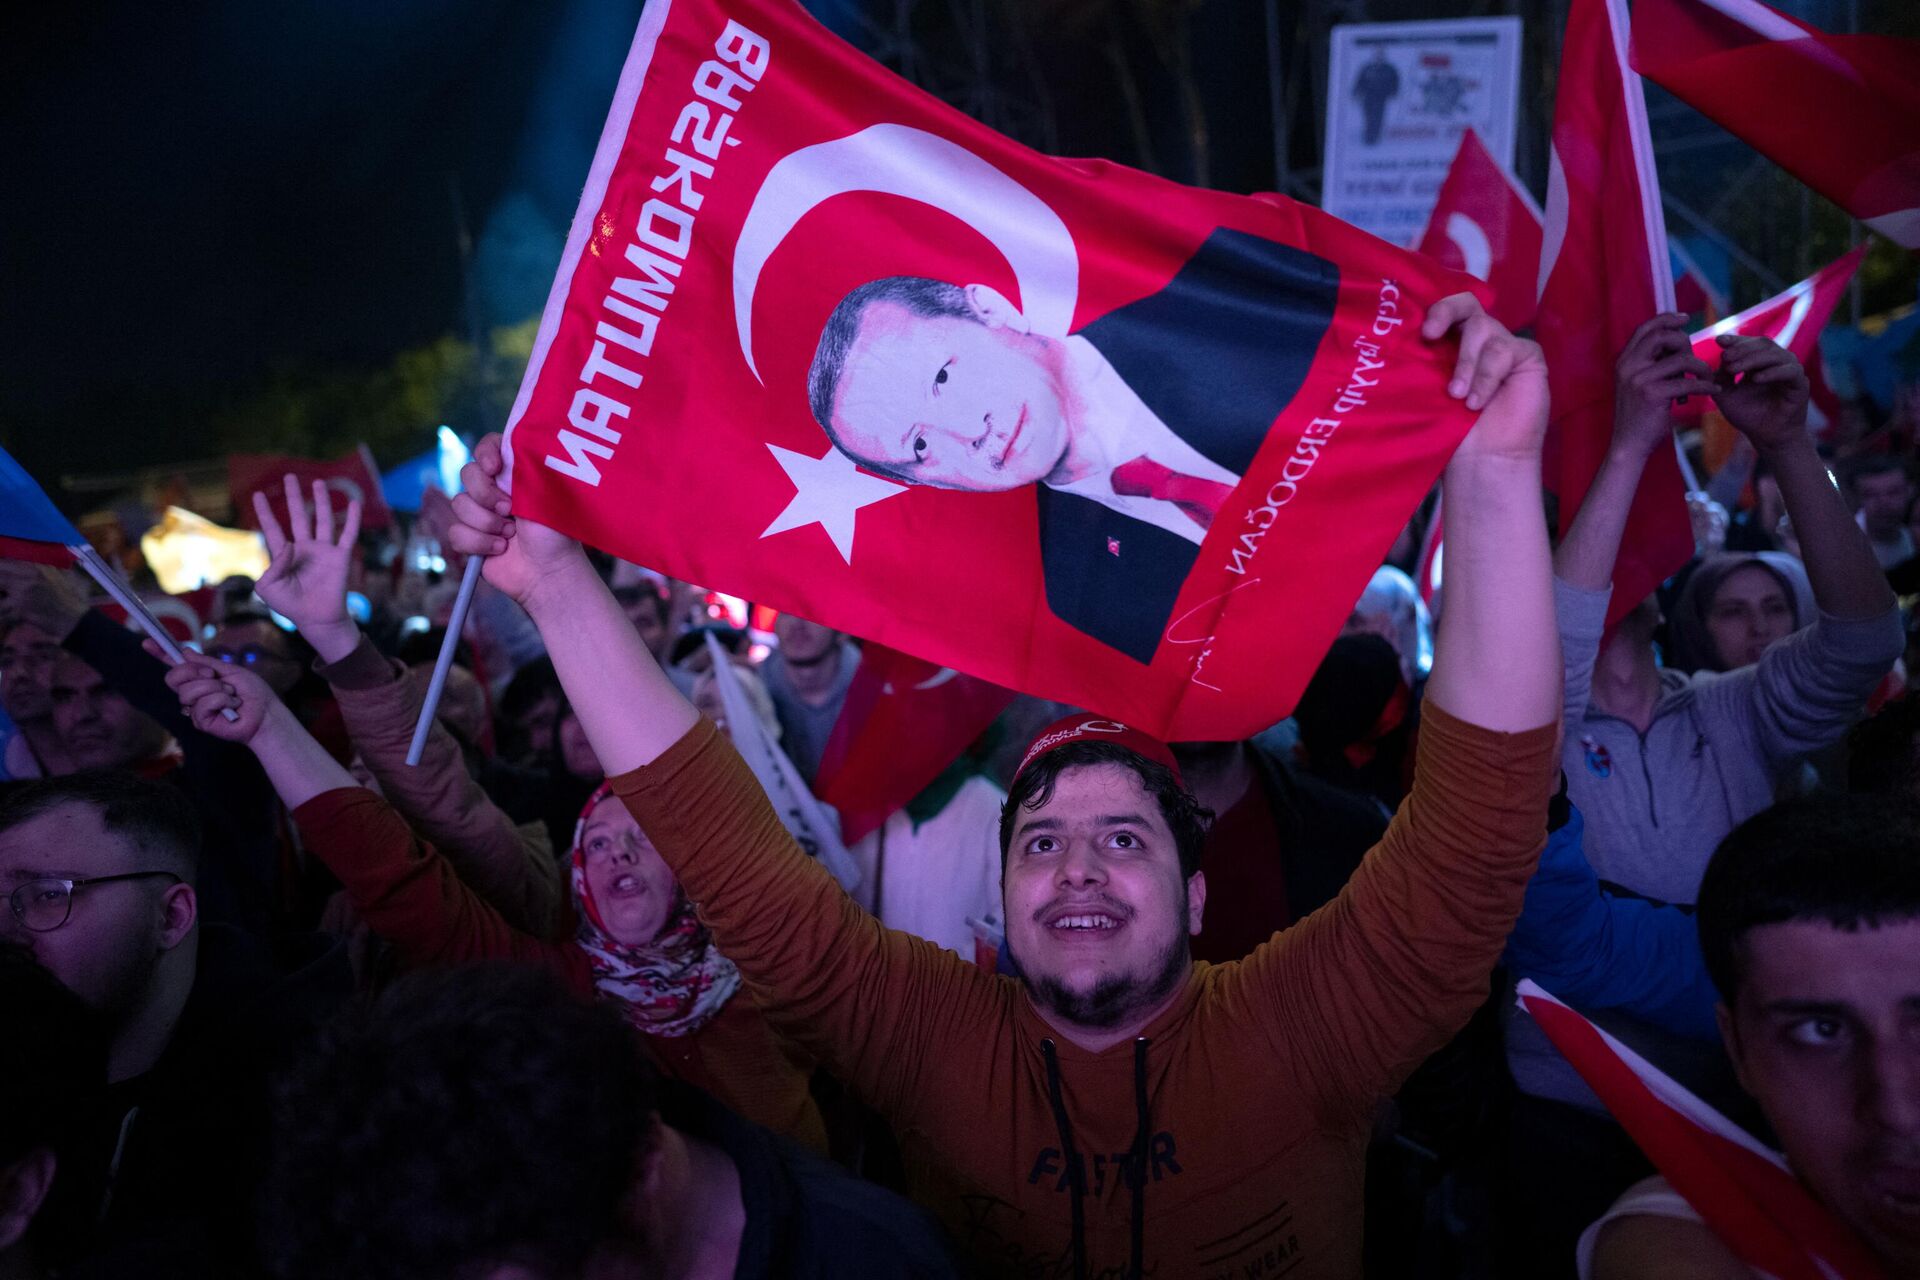 El rostro del presidente turco Recep Tayyip Erdogan en una bandera durante las celebraciones públicas por su triunfo en las elecciones presidenciales - Sputnik Mundo, 1920, 28.05.2023